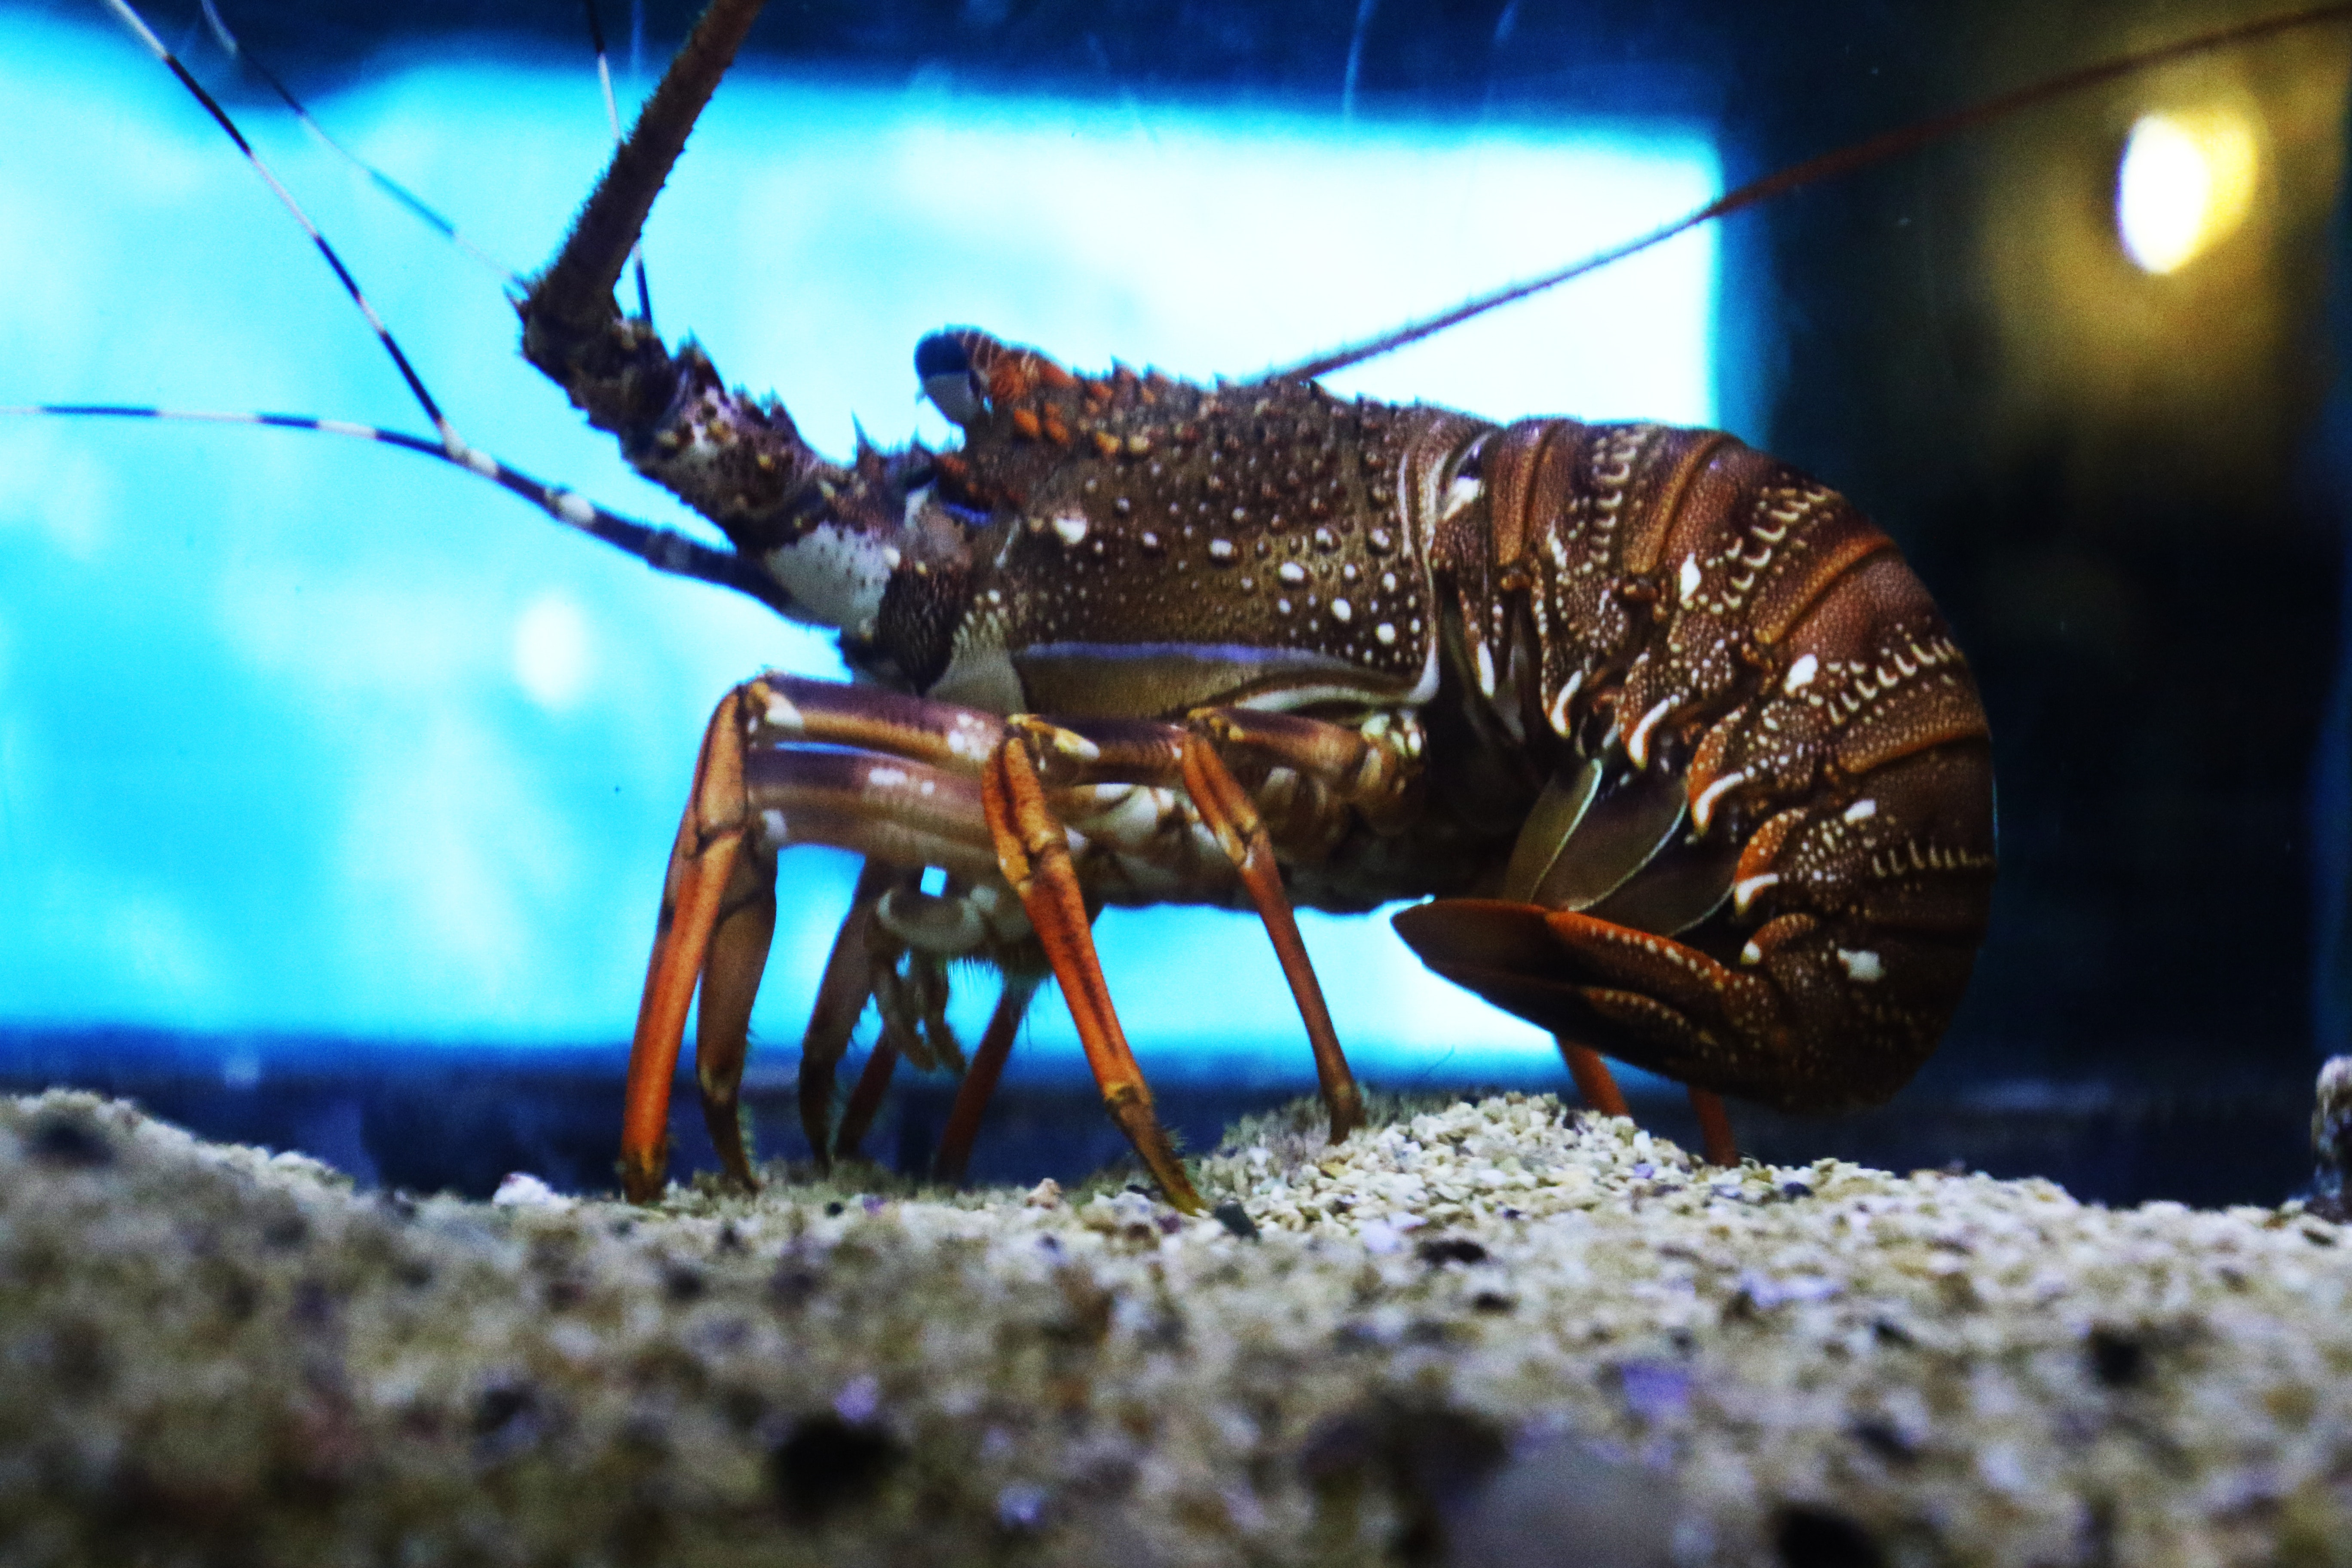 Crayfish in the aquarium  photo